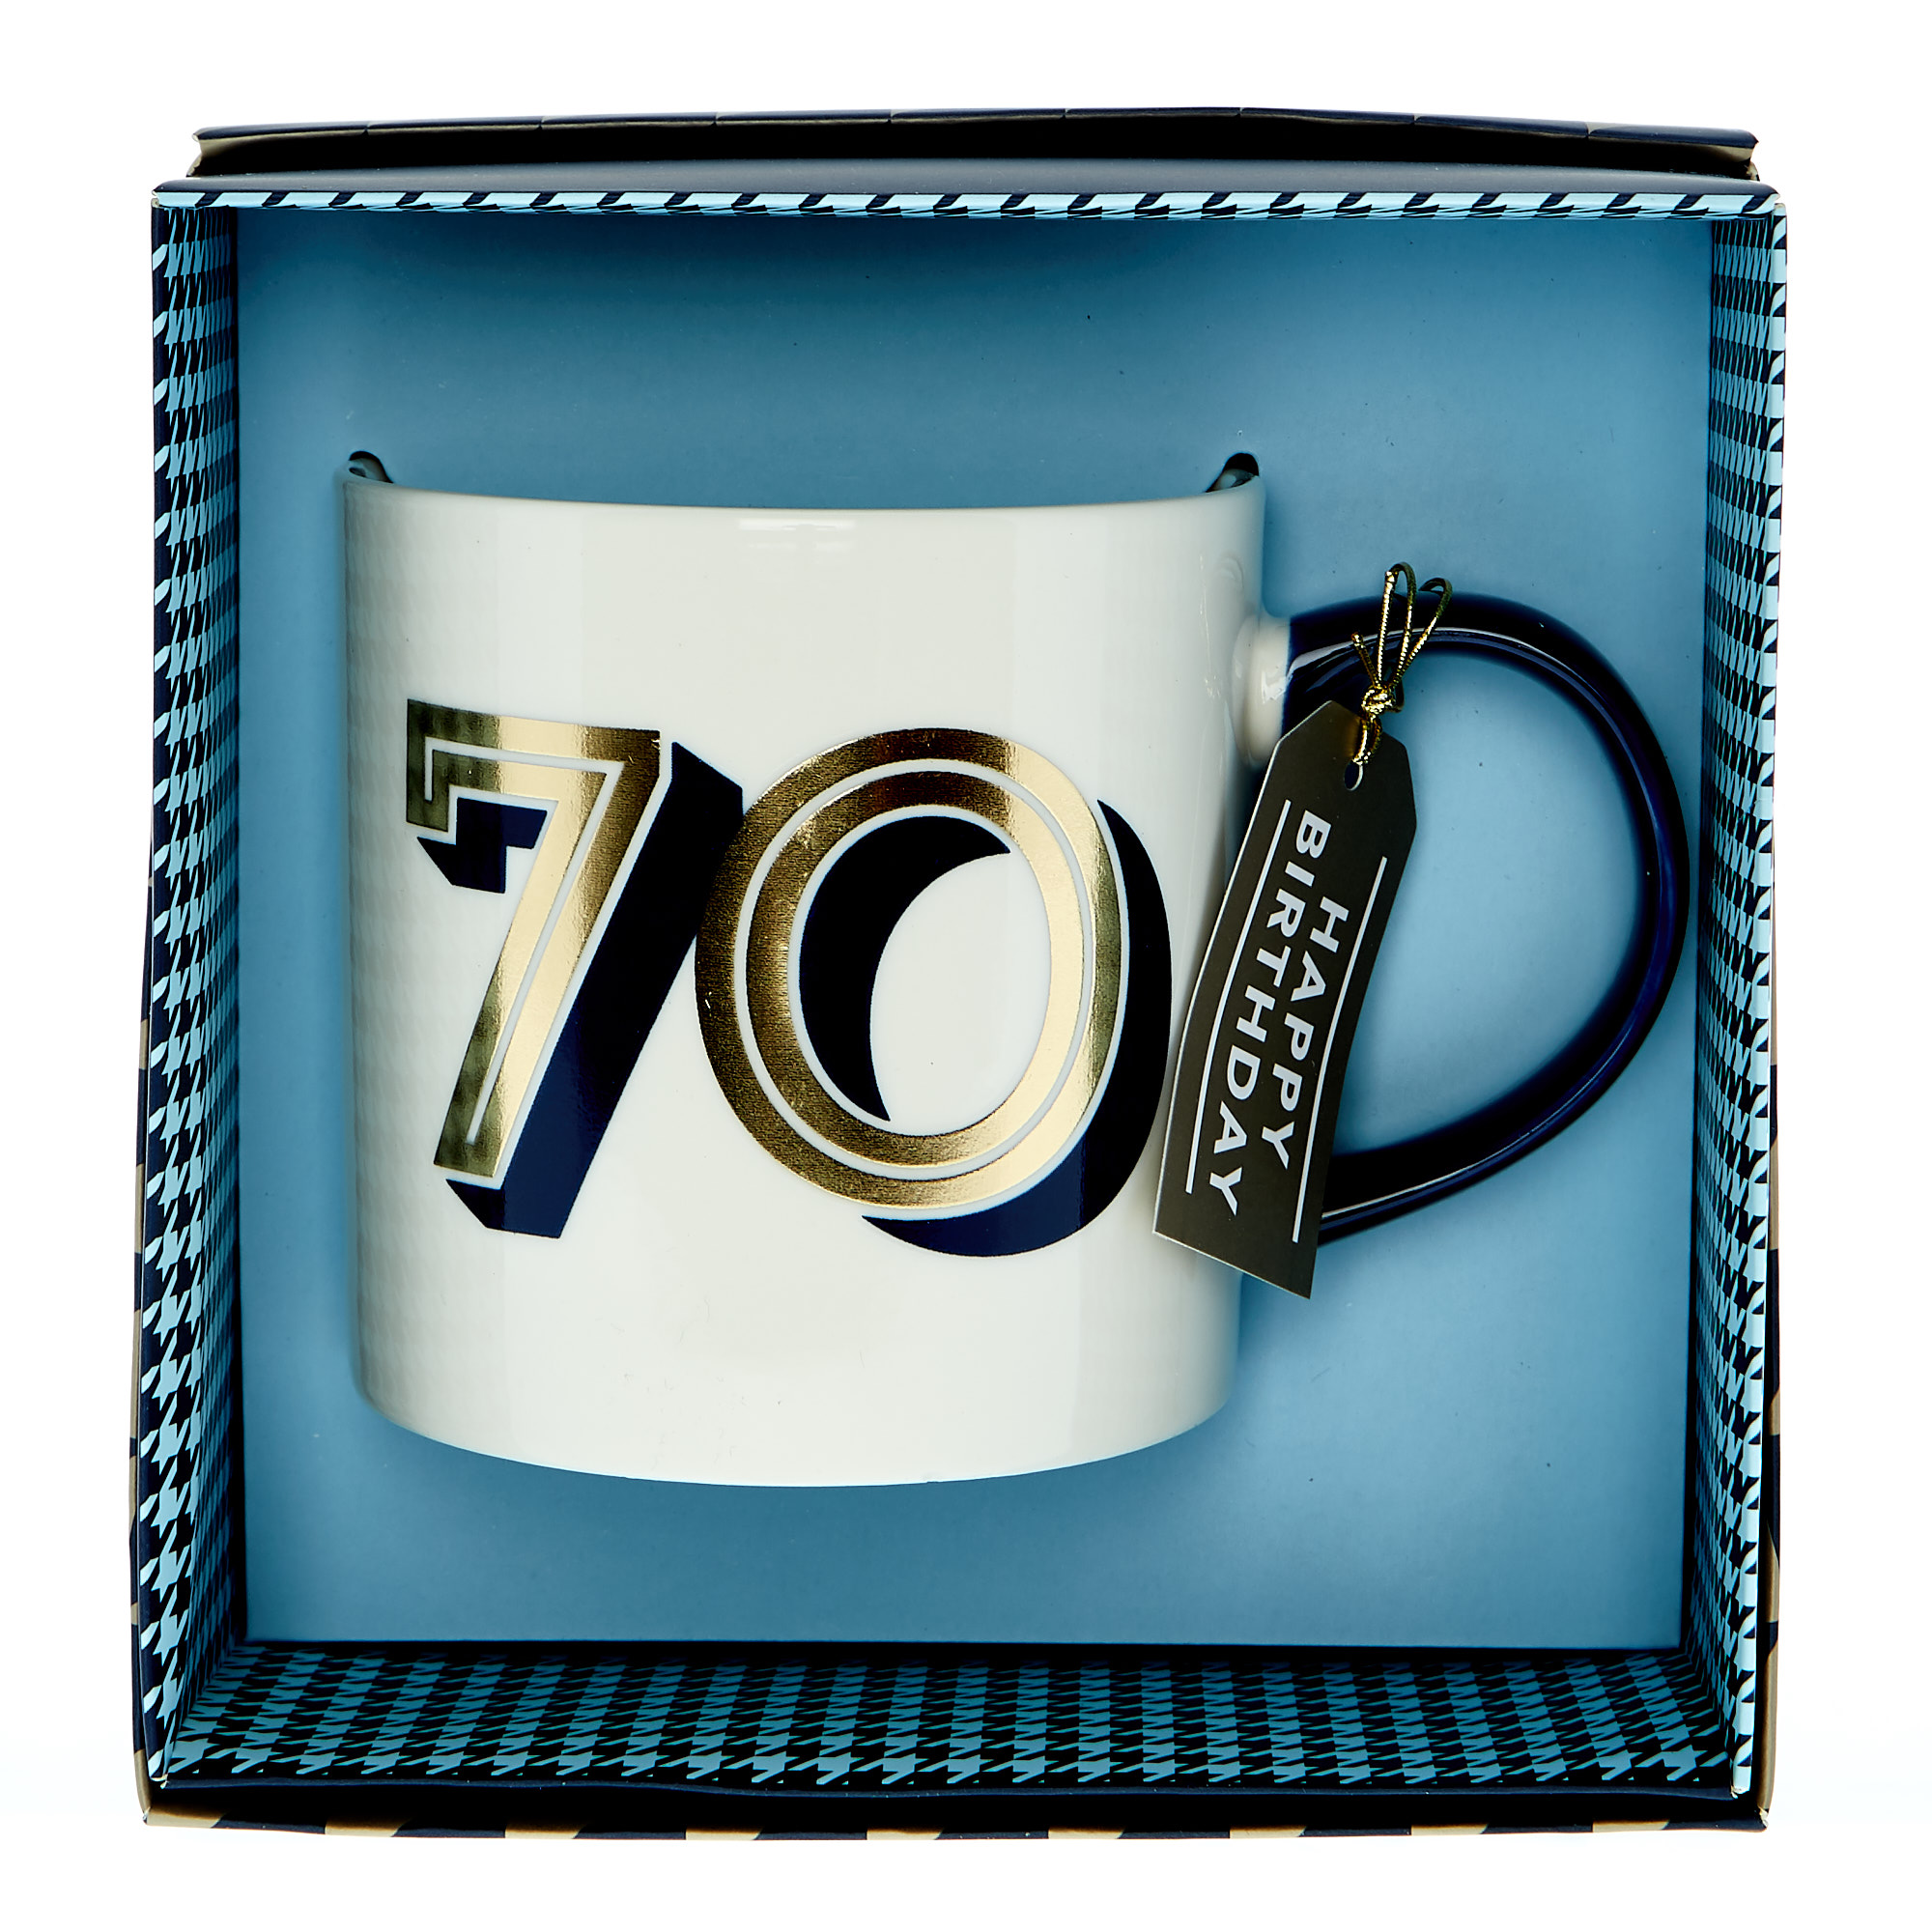 70th Birthday Mug In A Box - Blue & Gold 